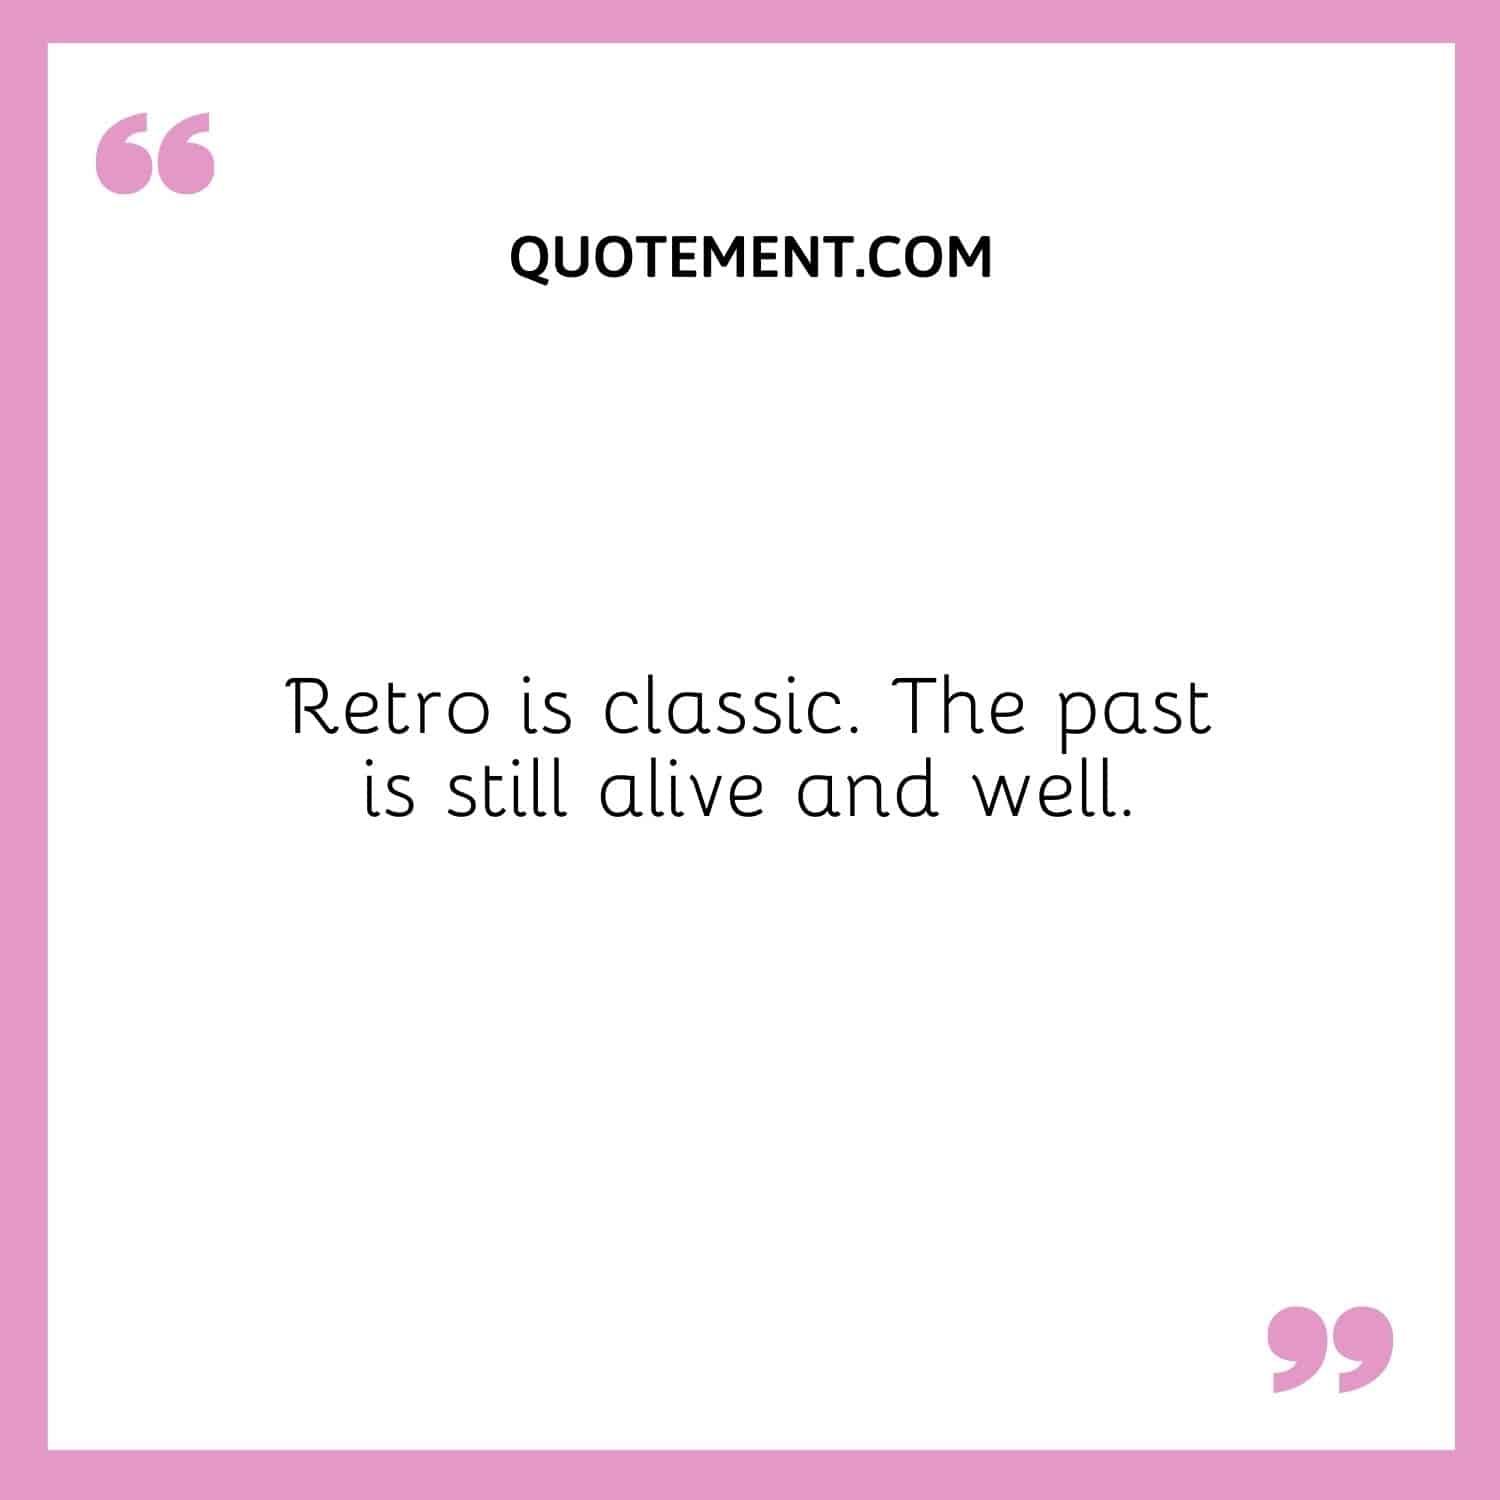 Retro is classic.